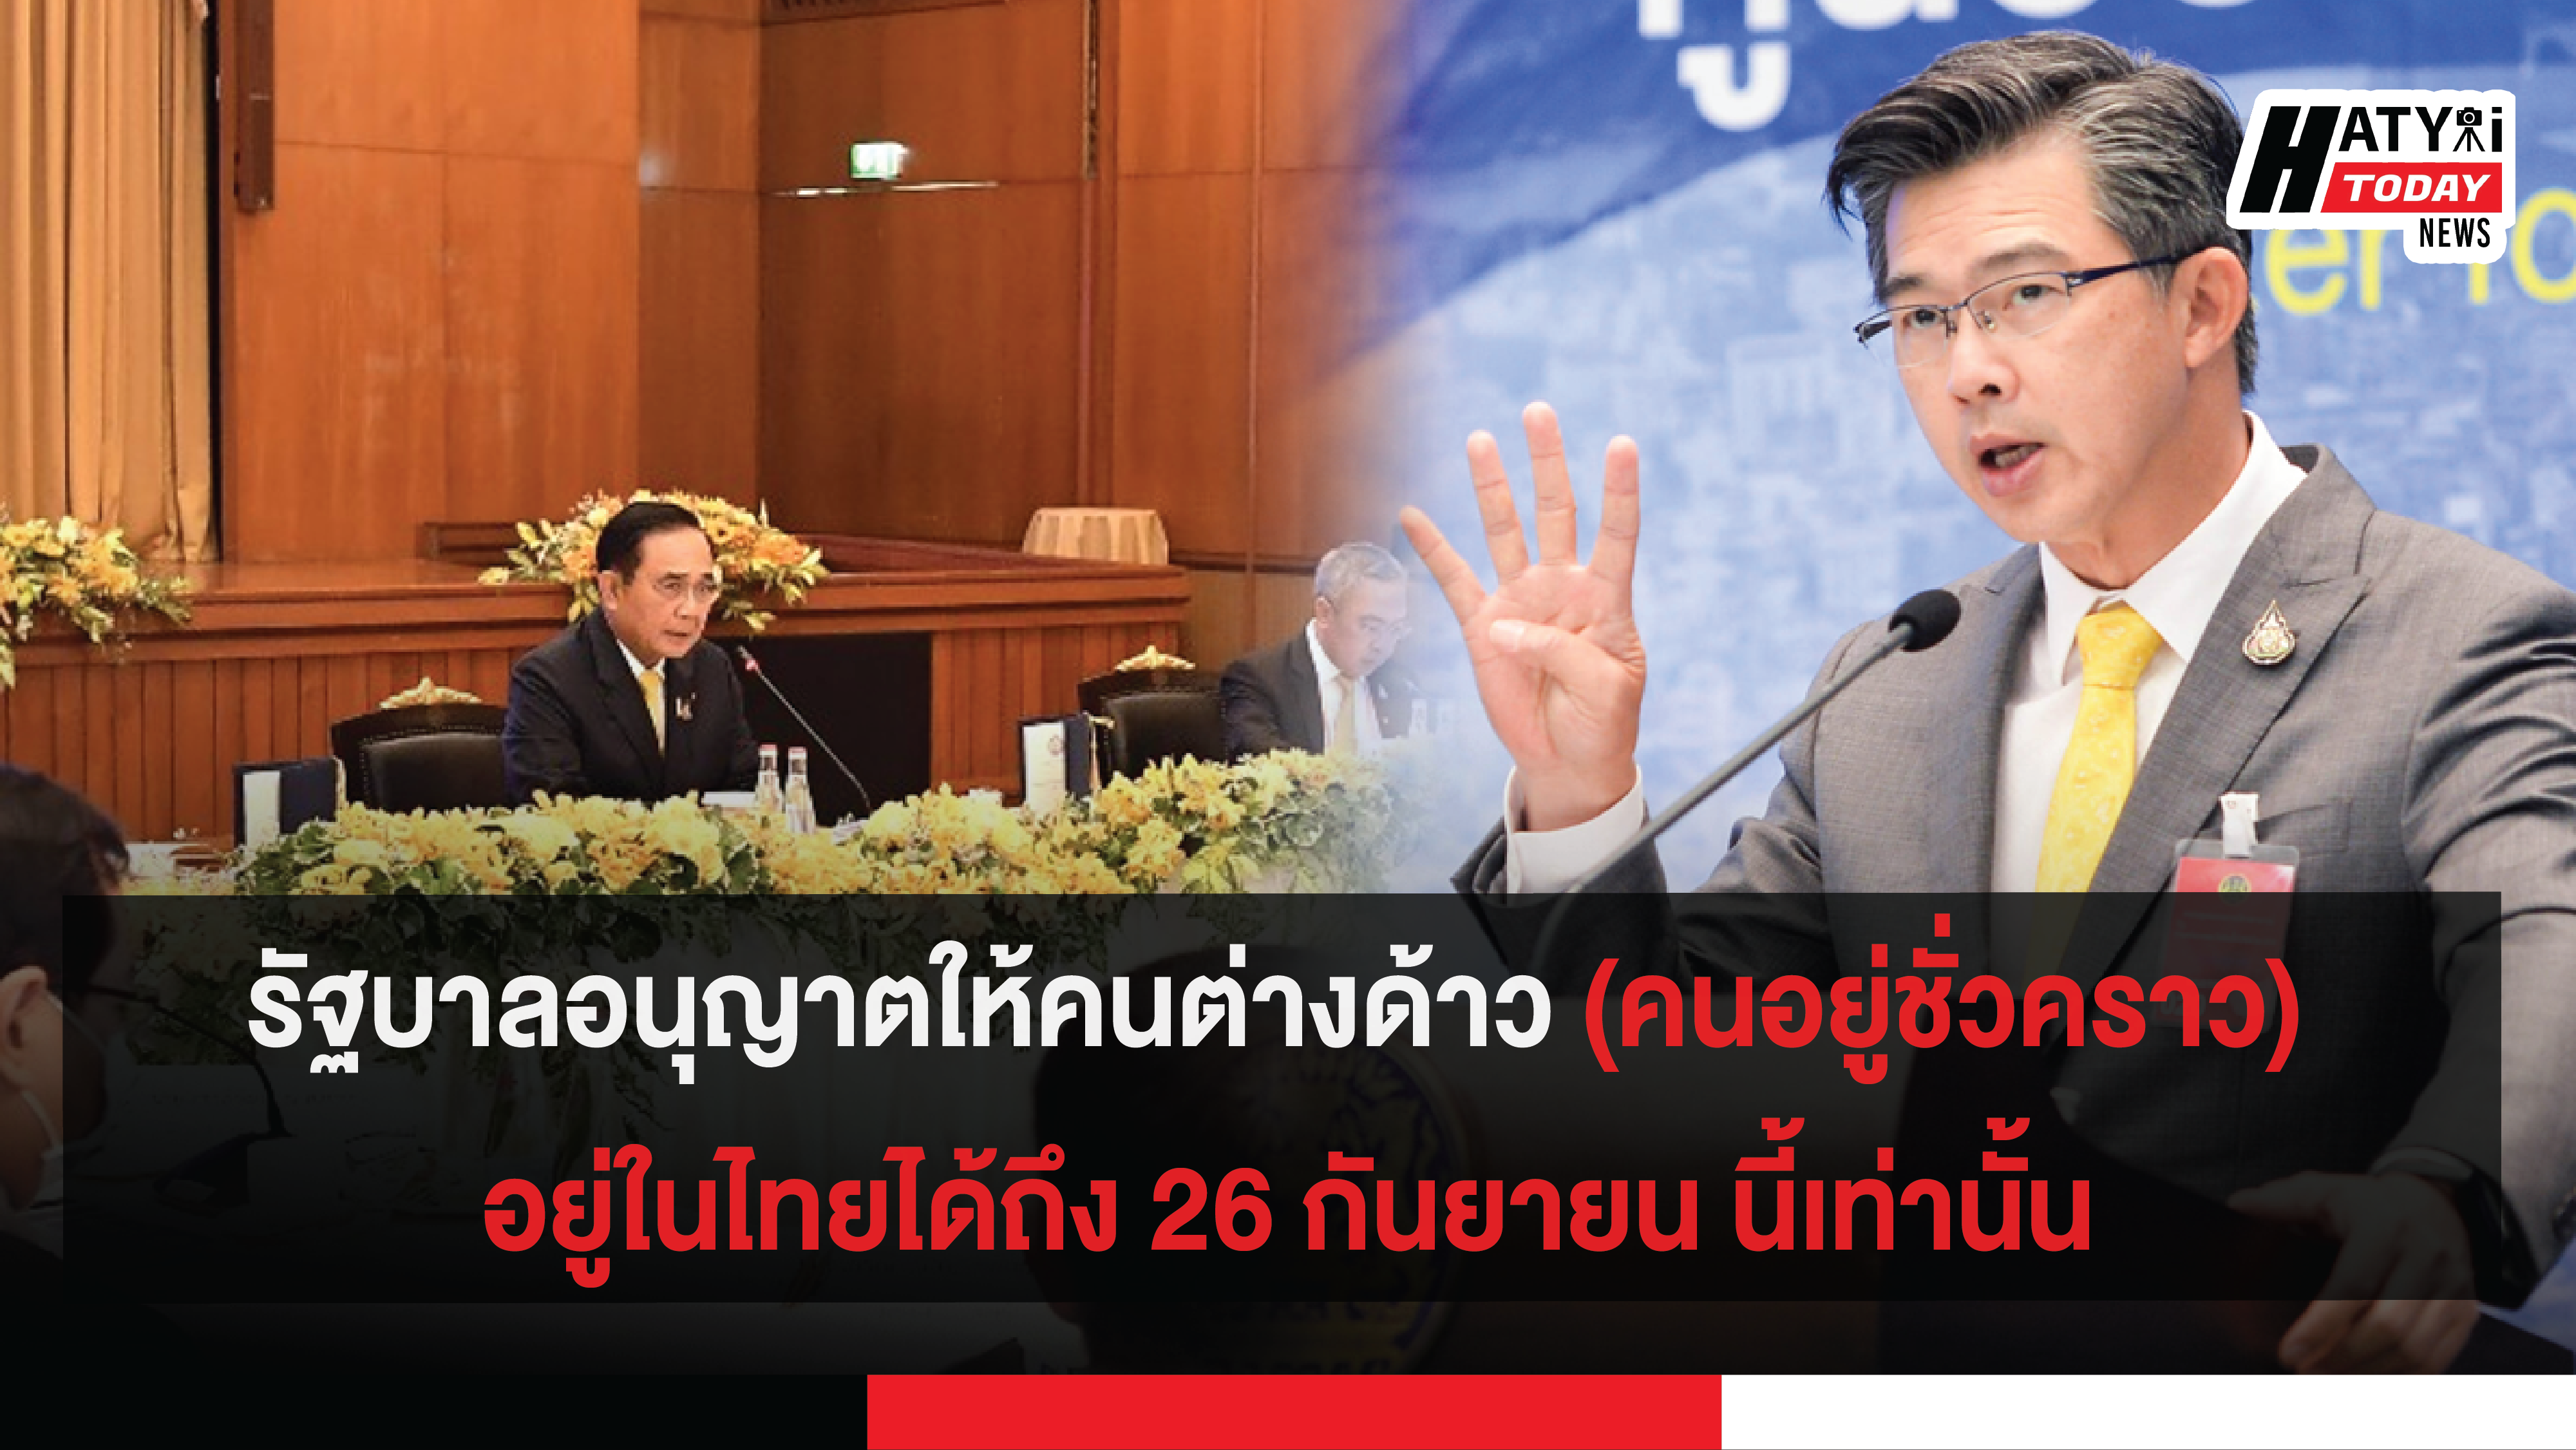 รัฐบาลอนุญาตให้คนต่างด้าว (คนอยู่ชั่วคราว) อยู่ในไทยได้ถึง 26 กันยายน นี้เท่านั้น